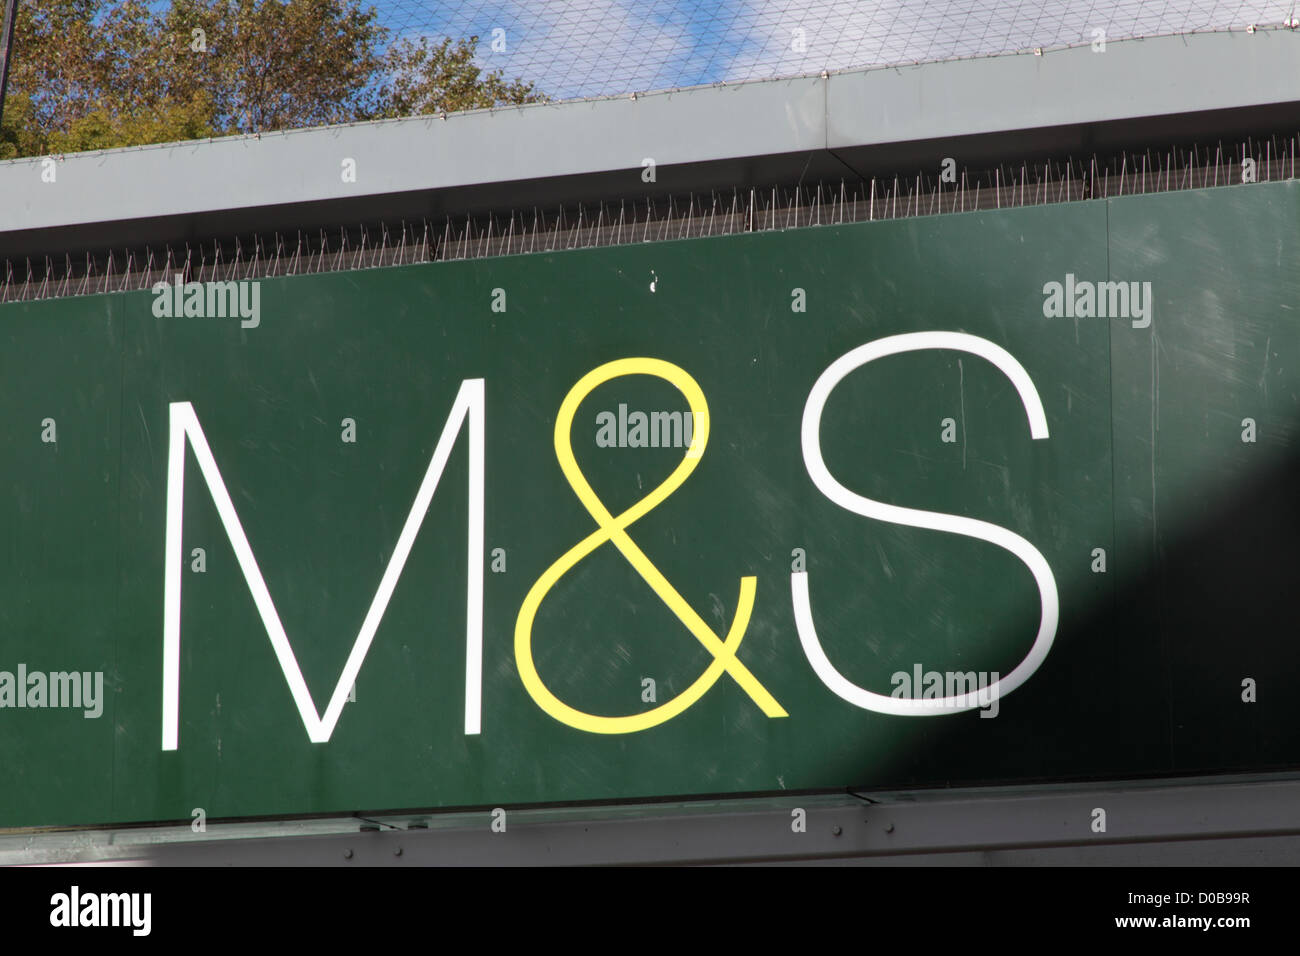 M&S signage Stock Photo